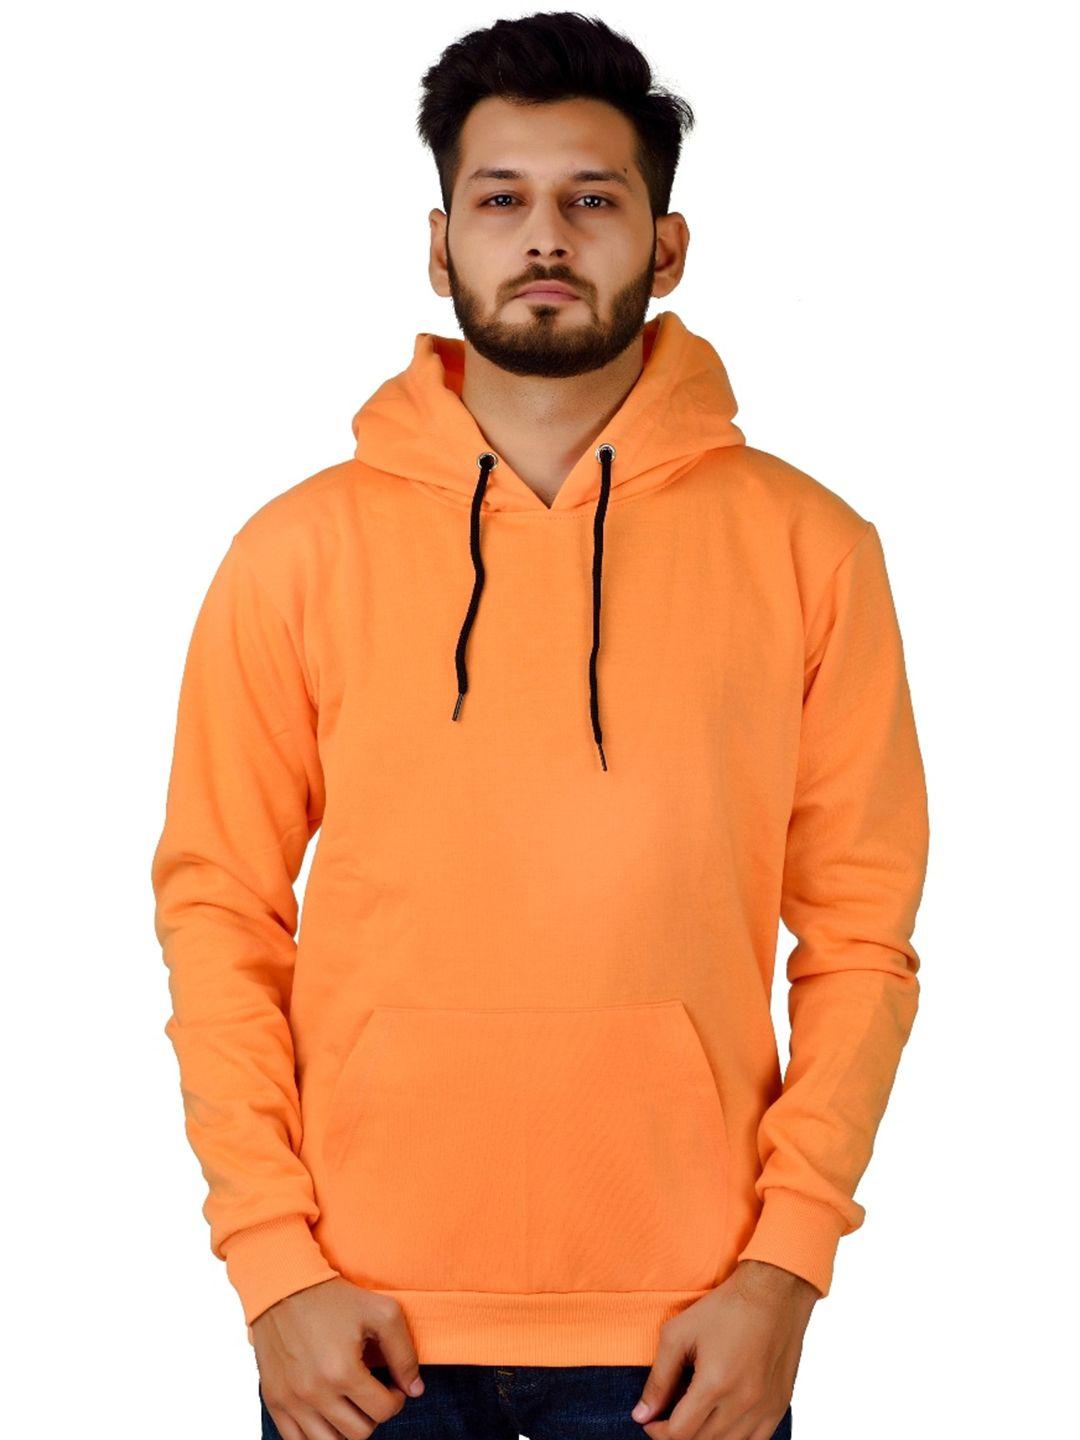 divra clothing unisex orange hooded sweatshirt